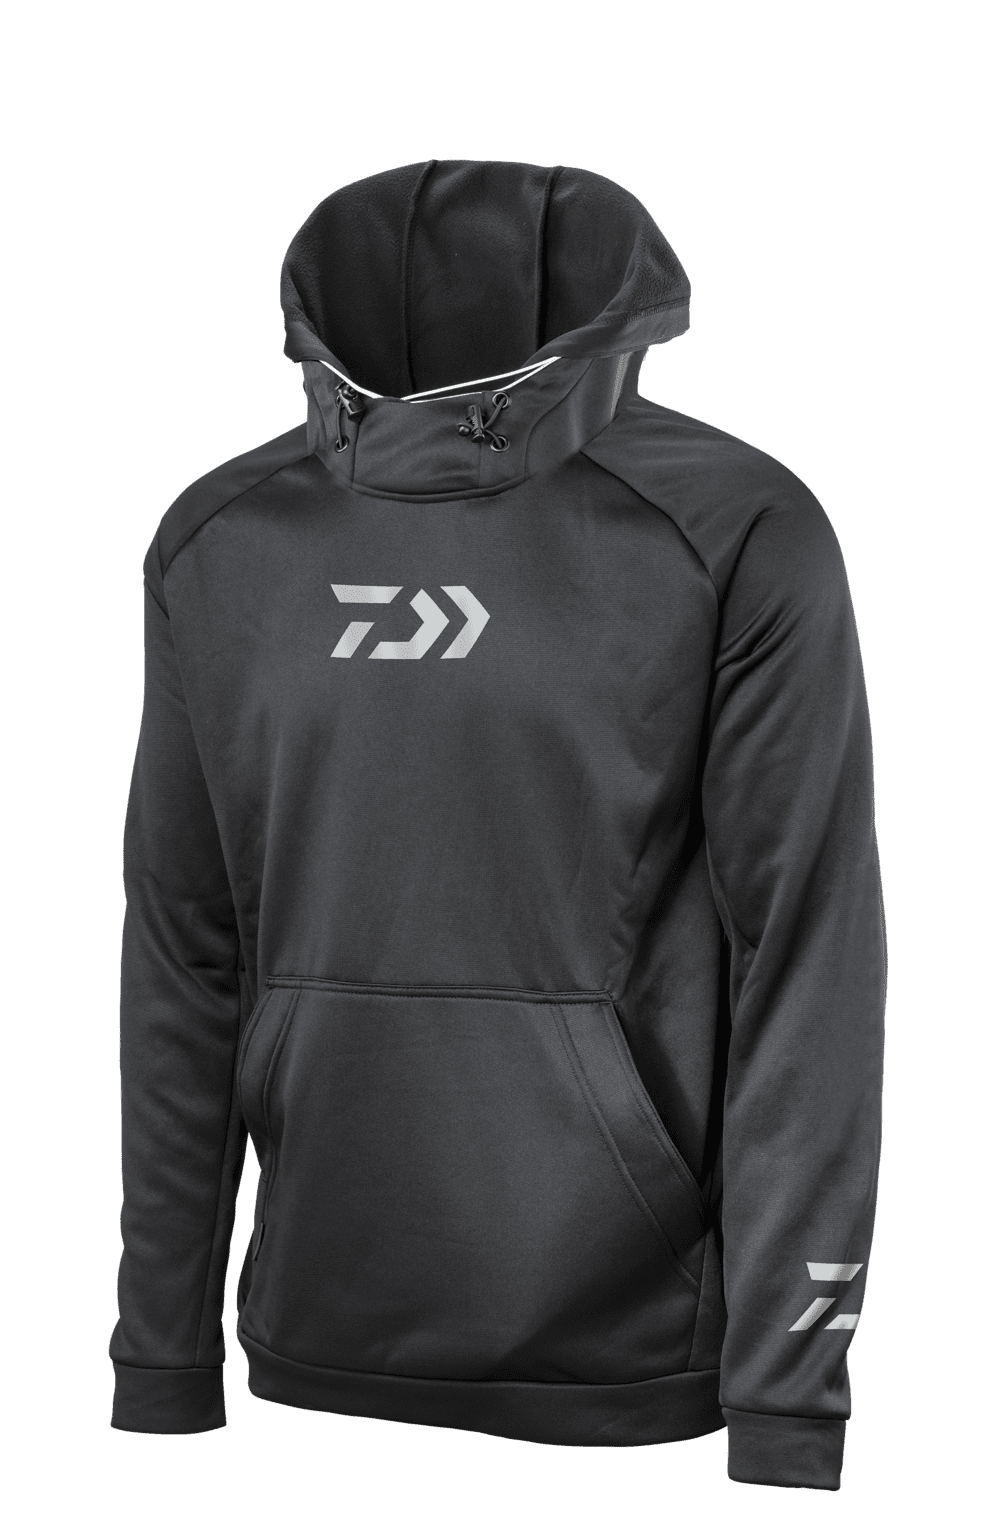 Daiwa D-Vec hoodie Navy Hoodie Hoody Various sizes comfortably 